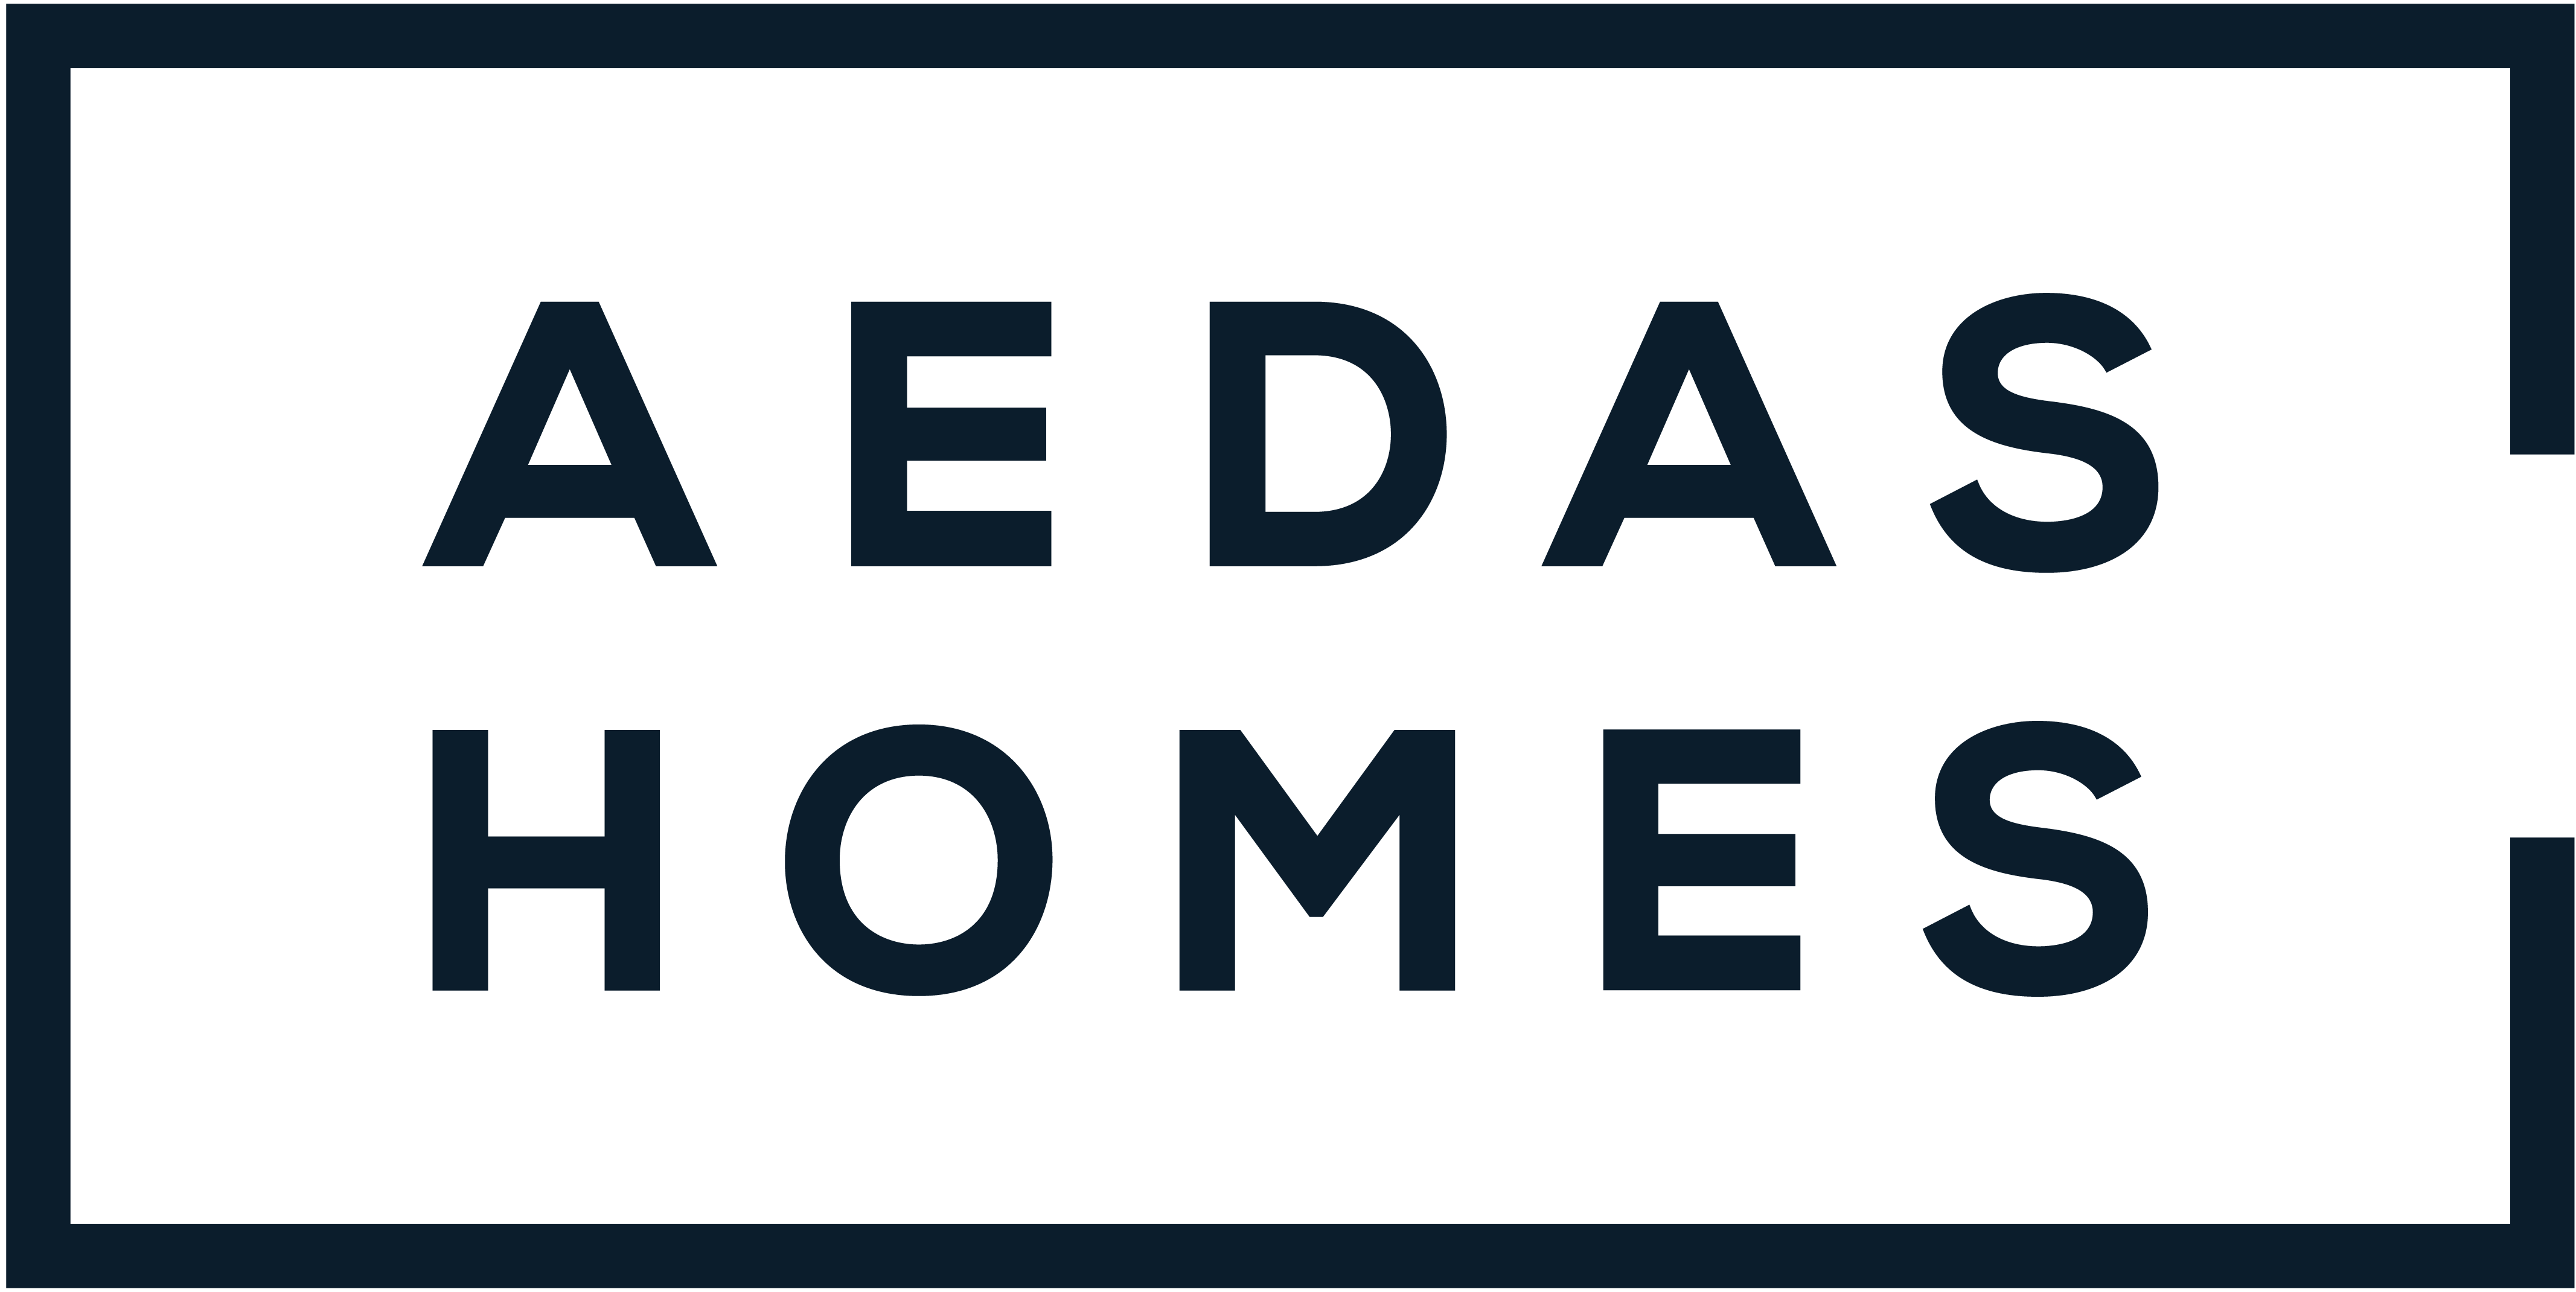 AEDAS HOMES